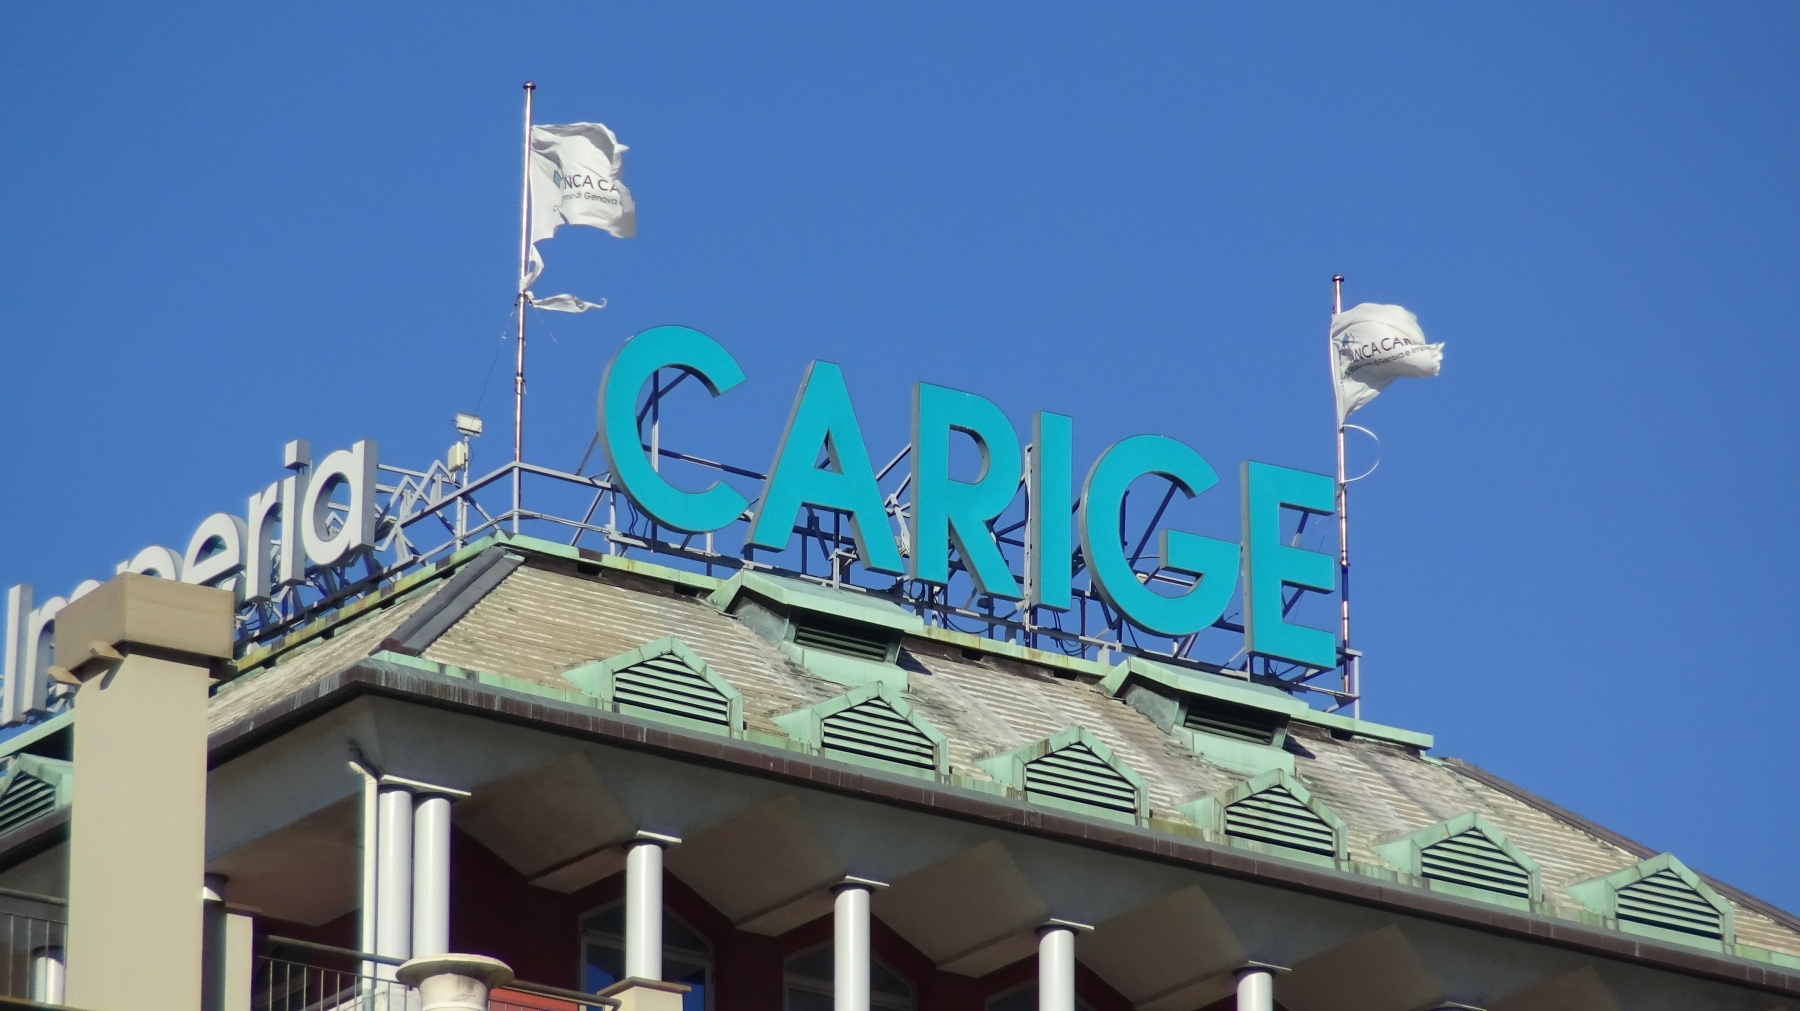 Banca Carige pronta all'addio a Piazza Affari, l'annuncio di Bper: "Il 20 settembre le azioni saranno sospese"